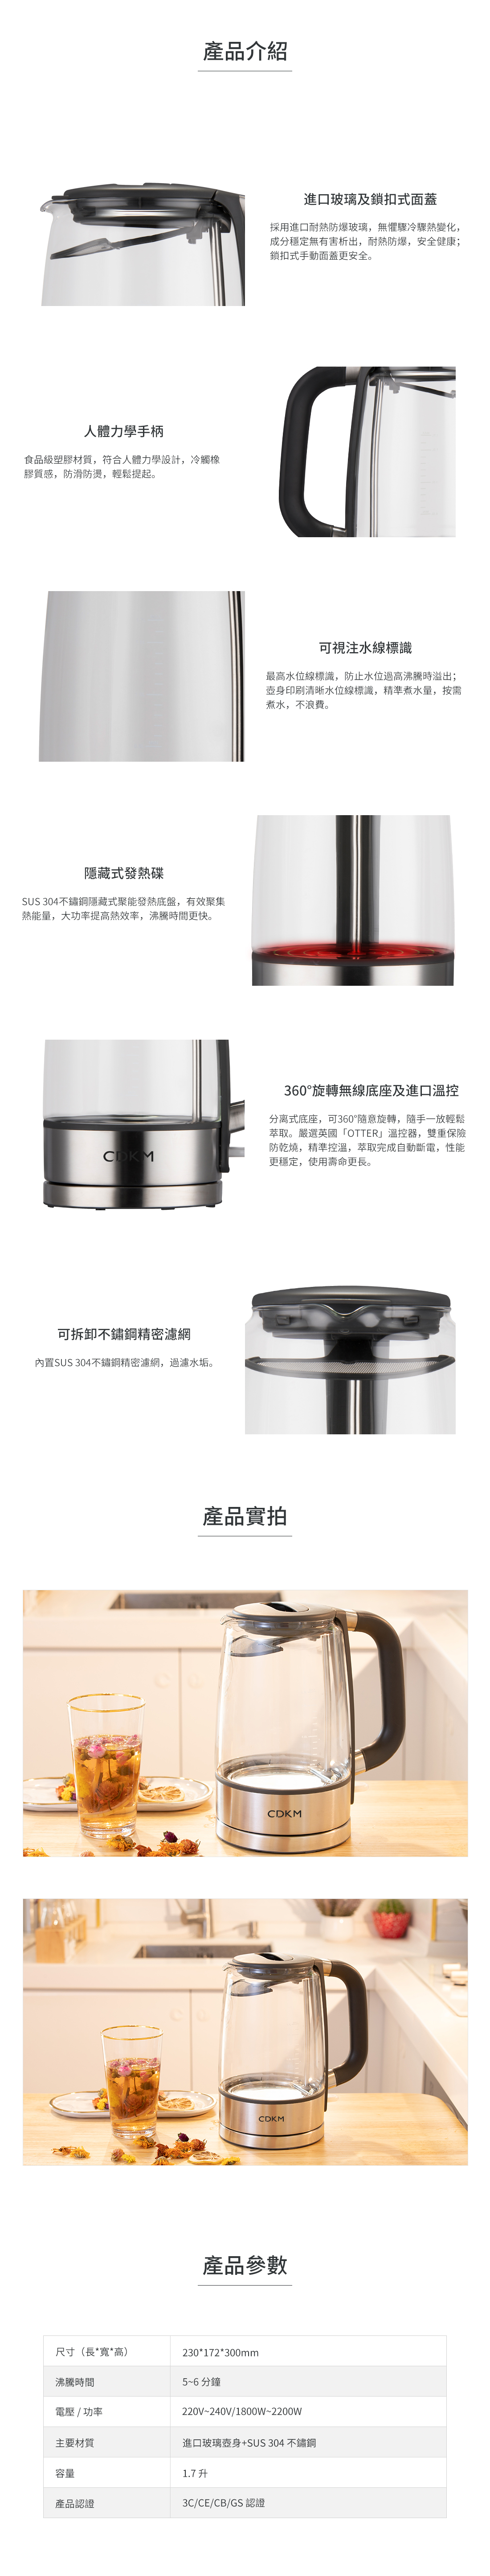 玻璃电热水壶LKG-09